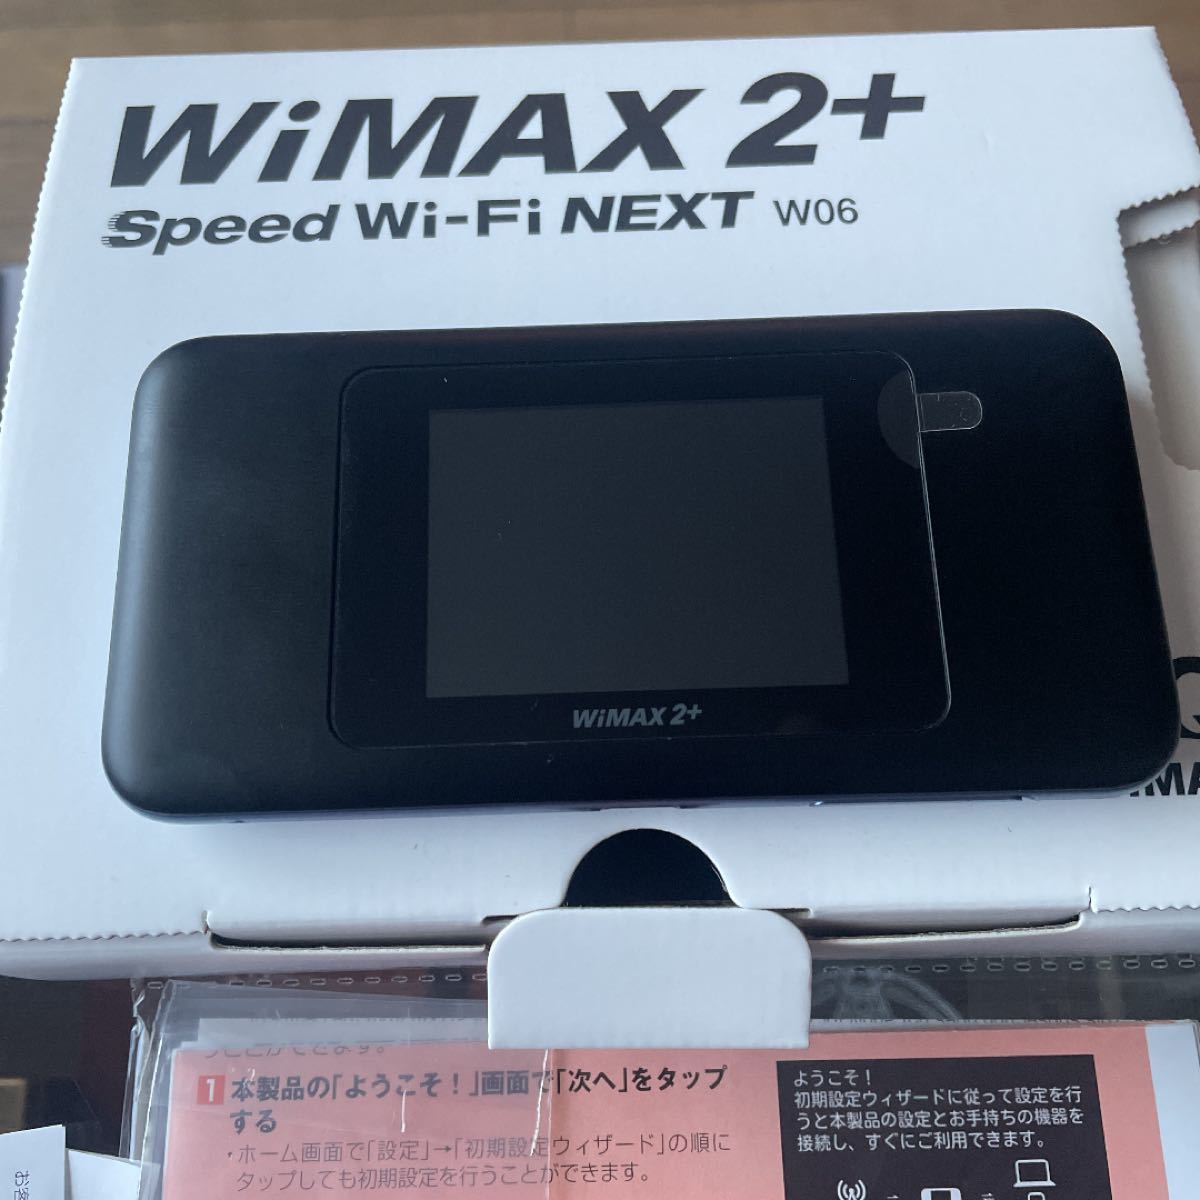 WiMAX 2+ speed wi-fi next w06